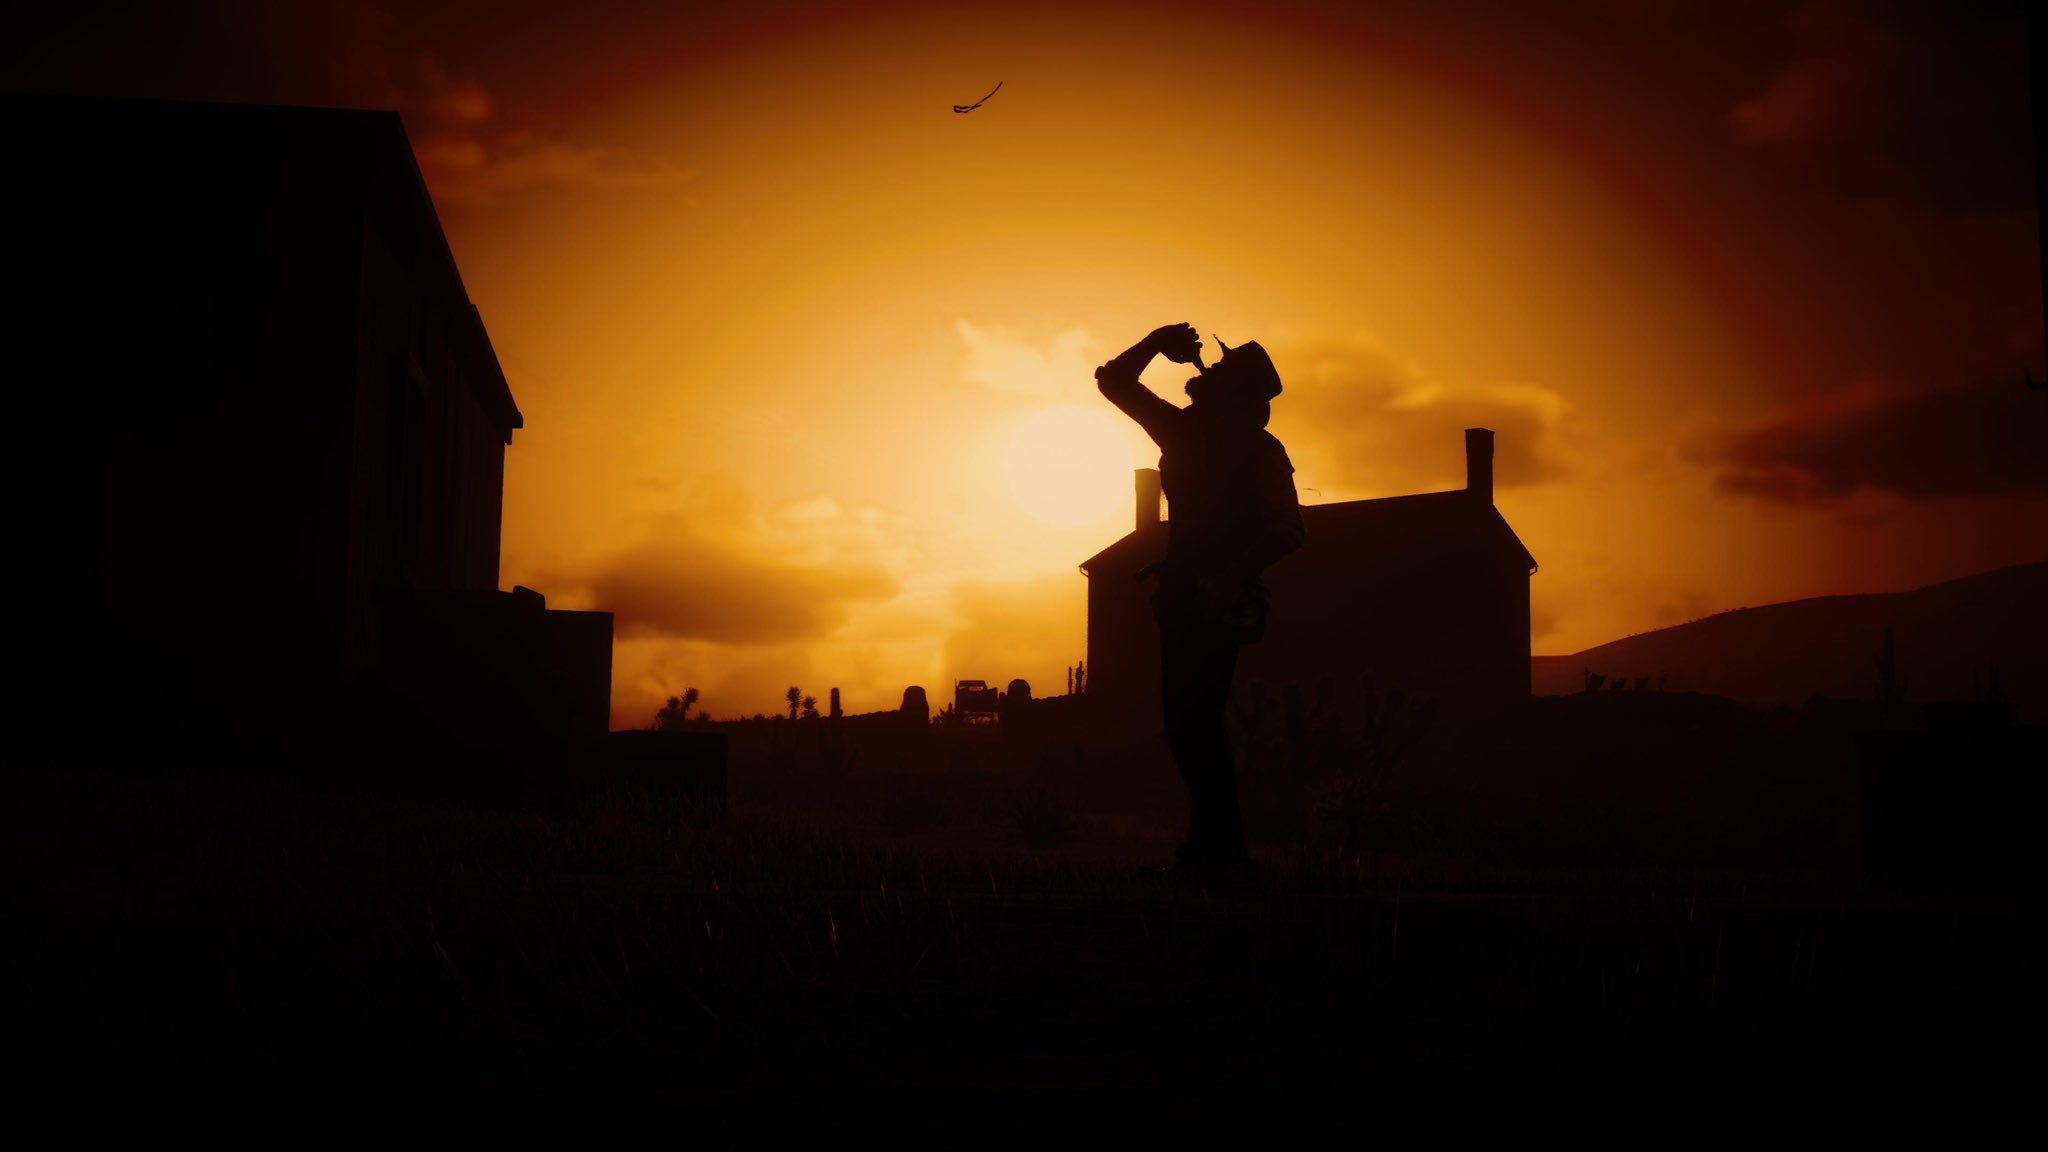 Foto tirada no jogo Red Dead Redemption 2 - Imagem: Reprodução/Twitter: @gelndo